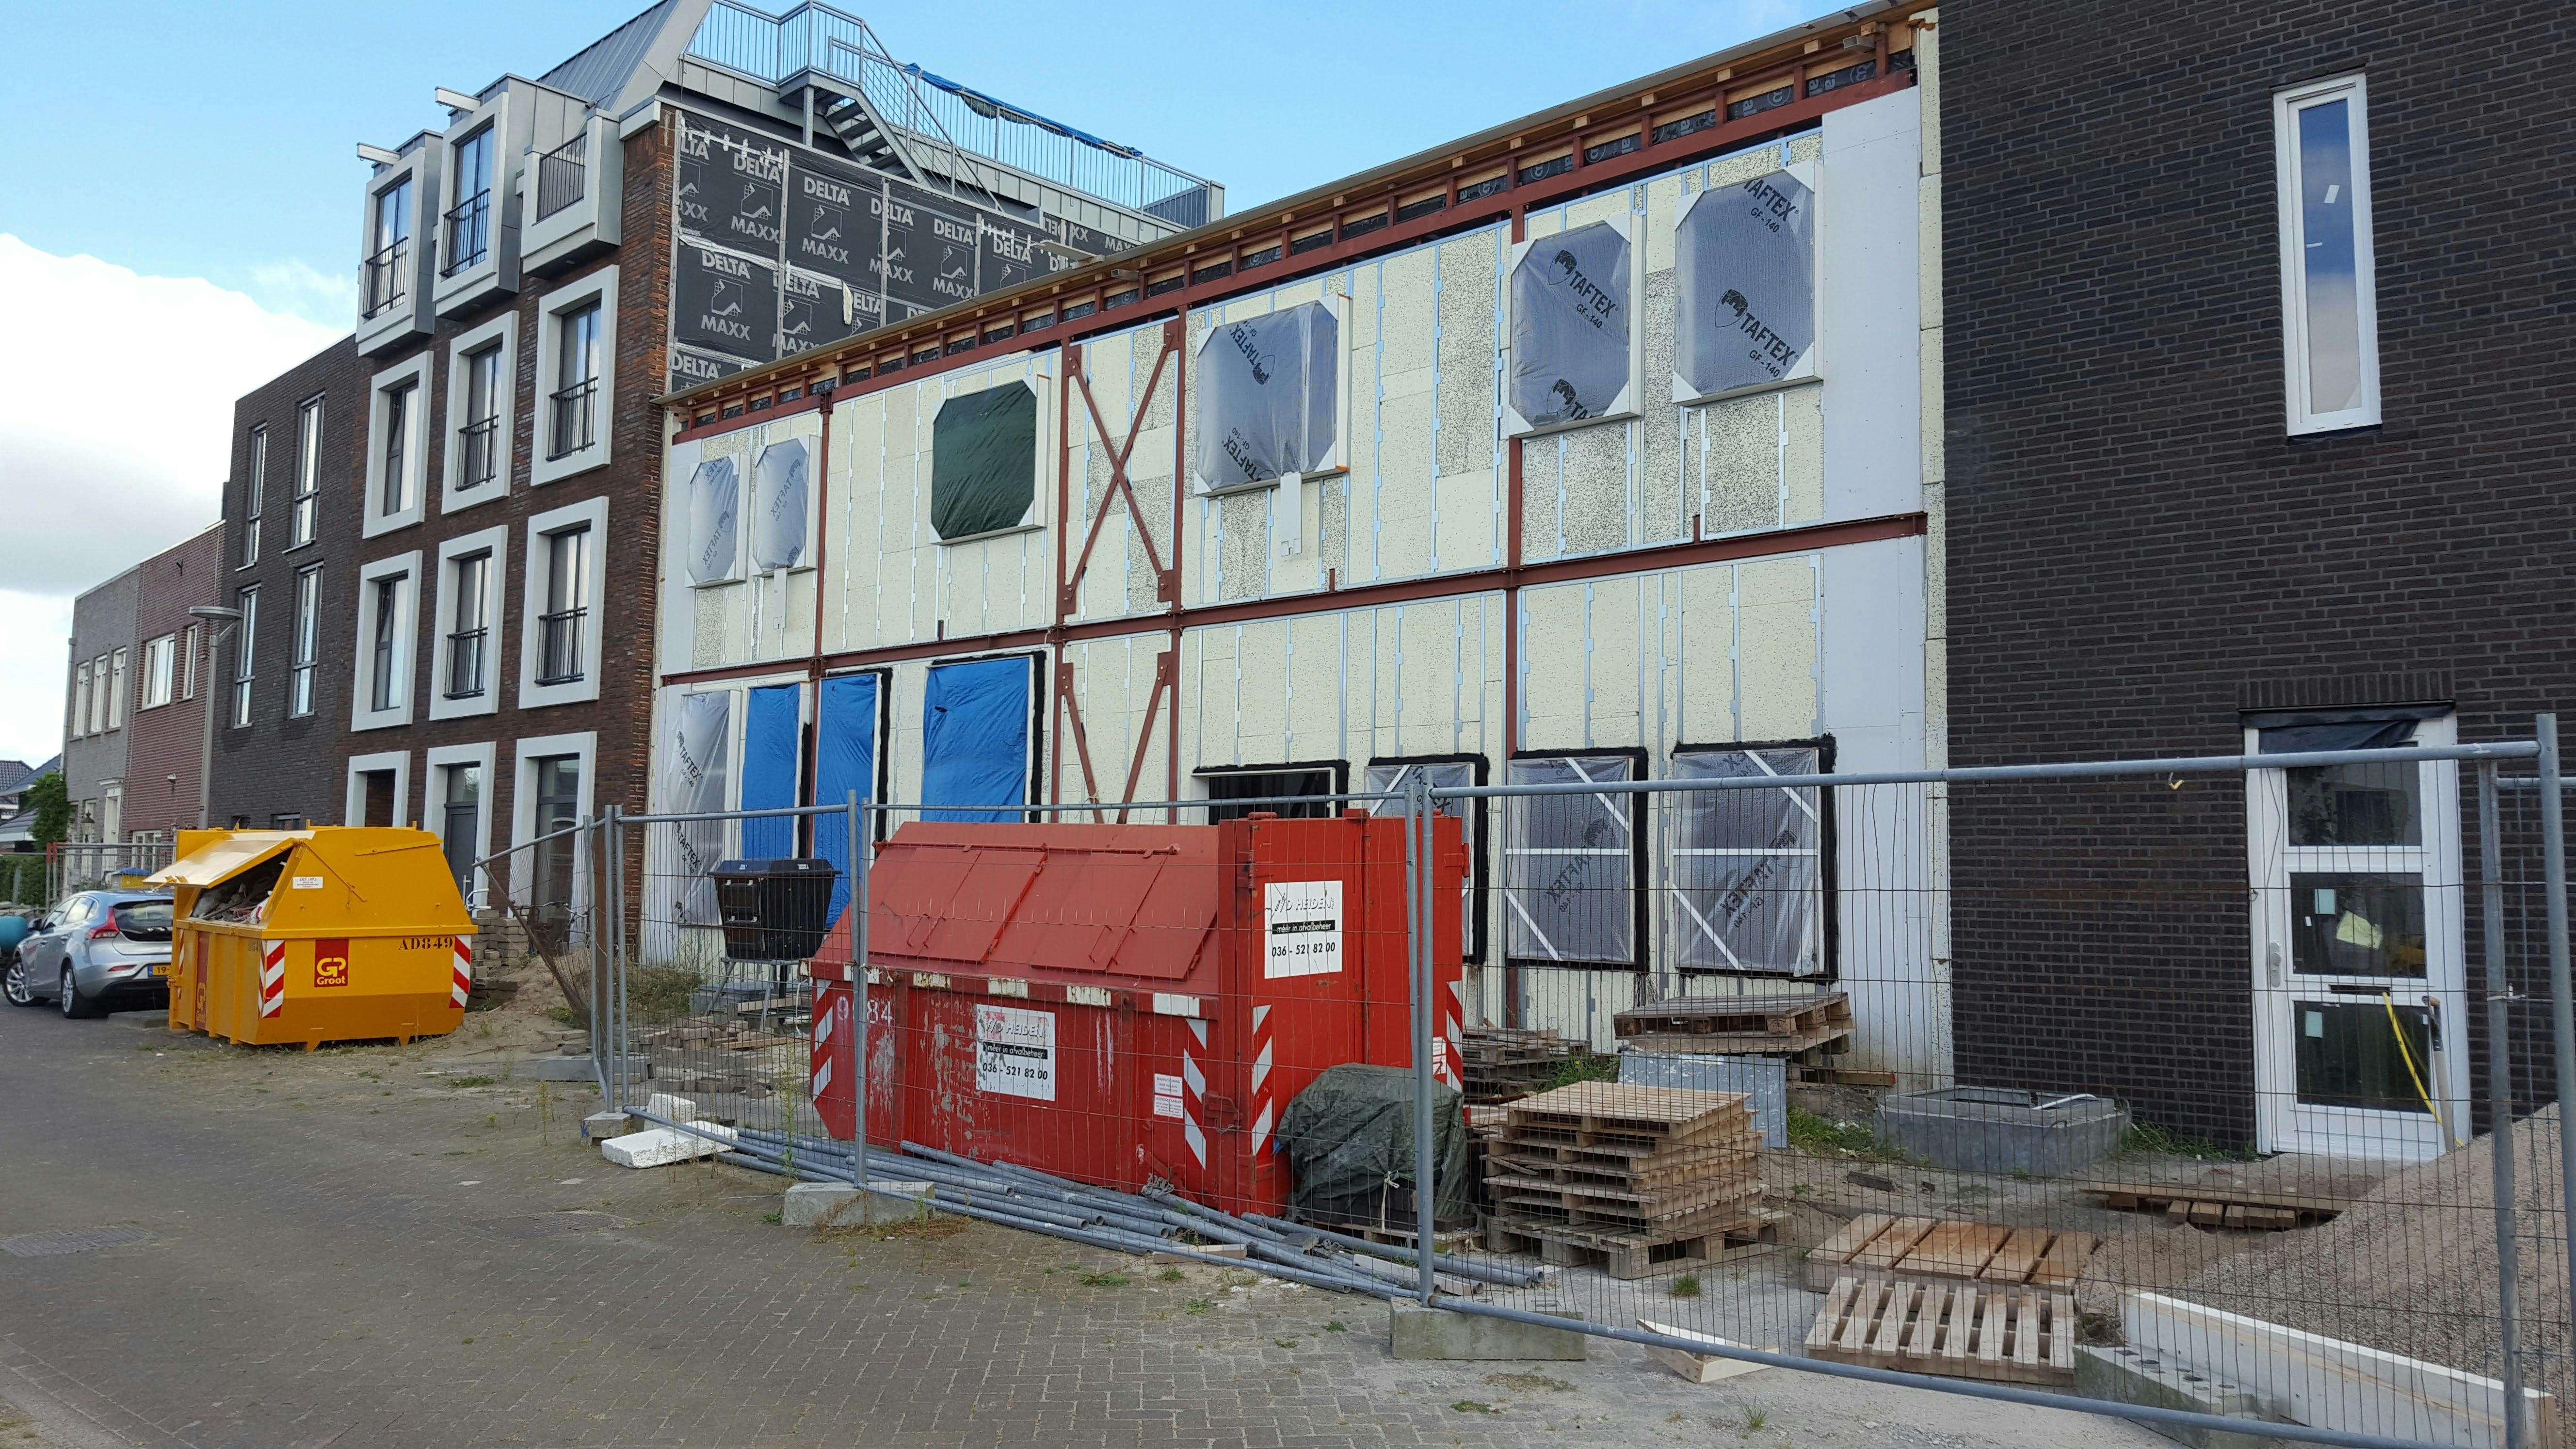 Nieuwbouwbende 'Brielle' lichtte al honderden huizenkopers en onderaannemers op in heel Nederland